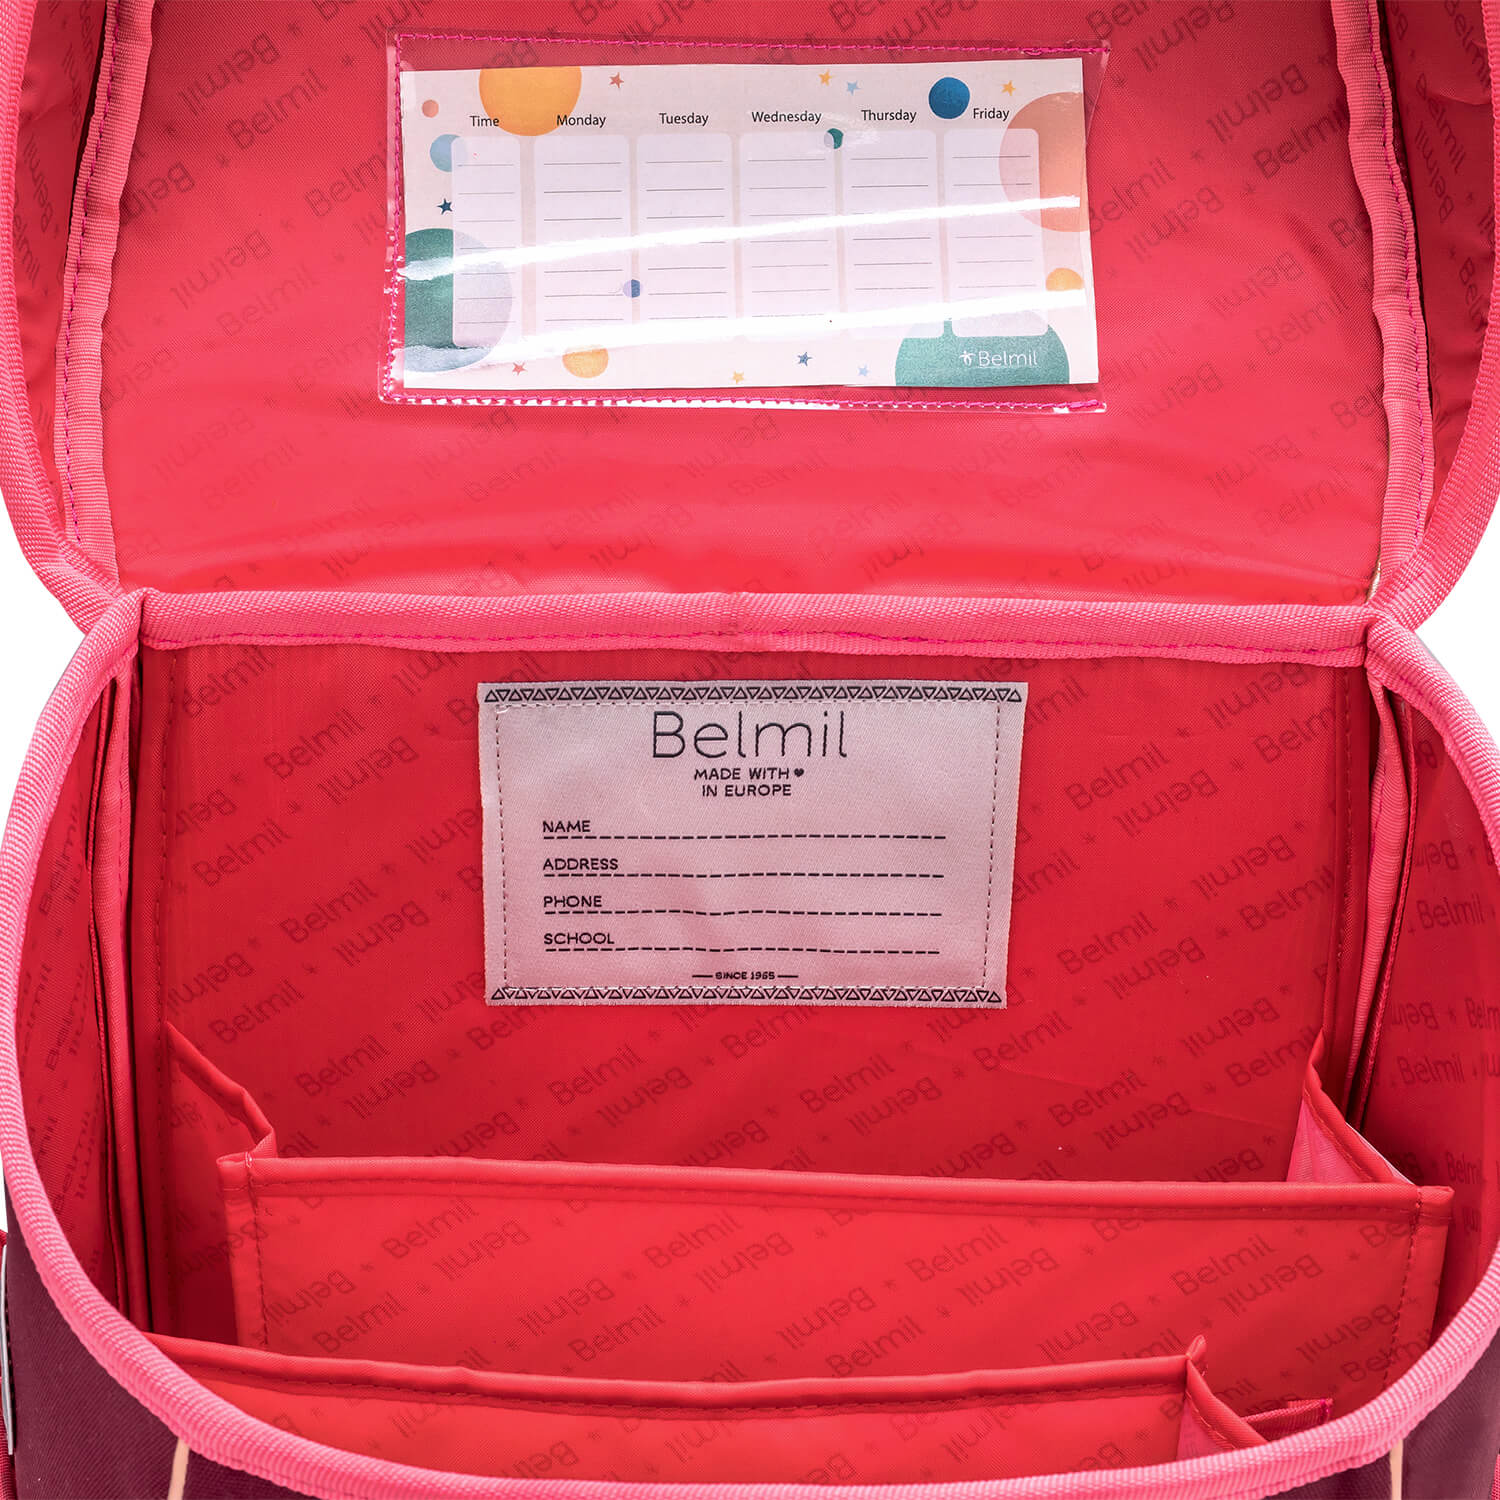 Premium Compact Plus Coral Schoolbag set 5pcs.